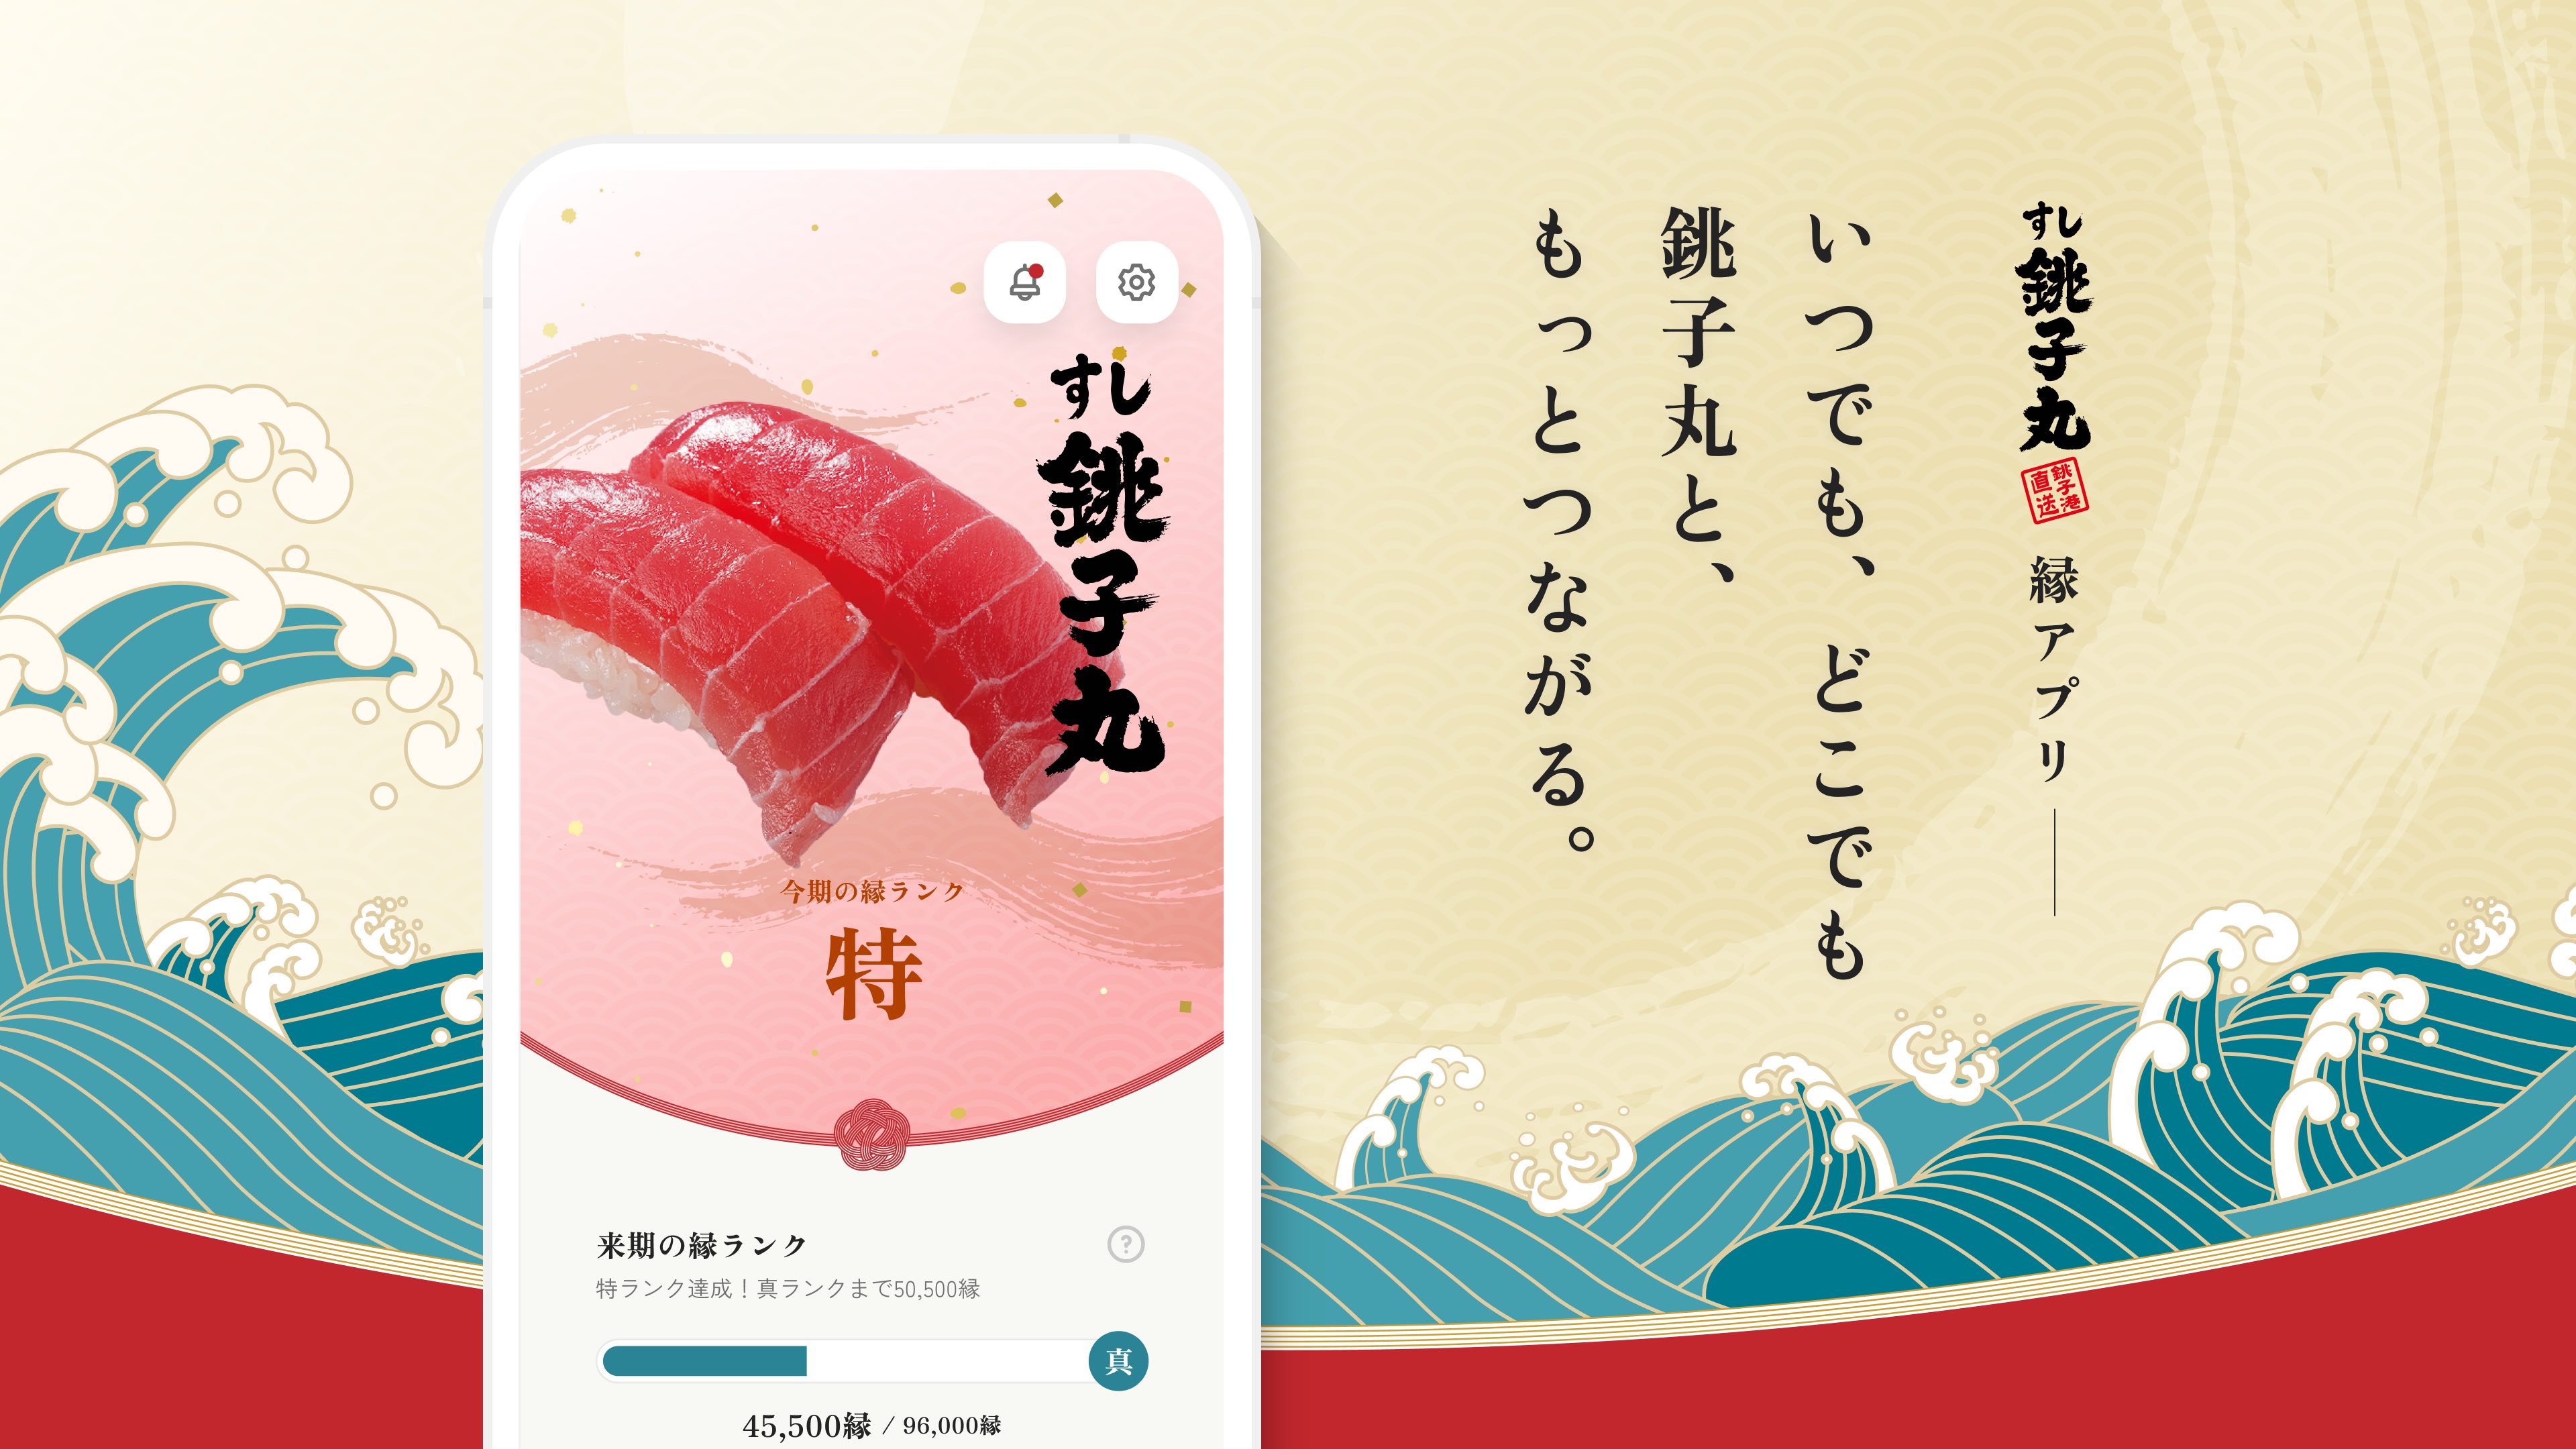 銚子丸公式アプリ「銚子丸 縁アプリ」をローンチ